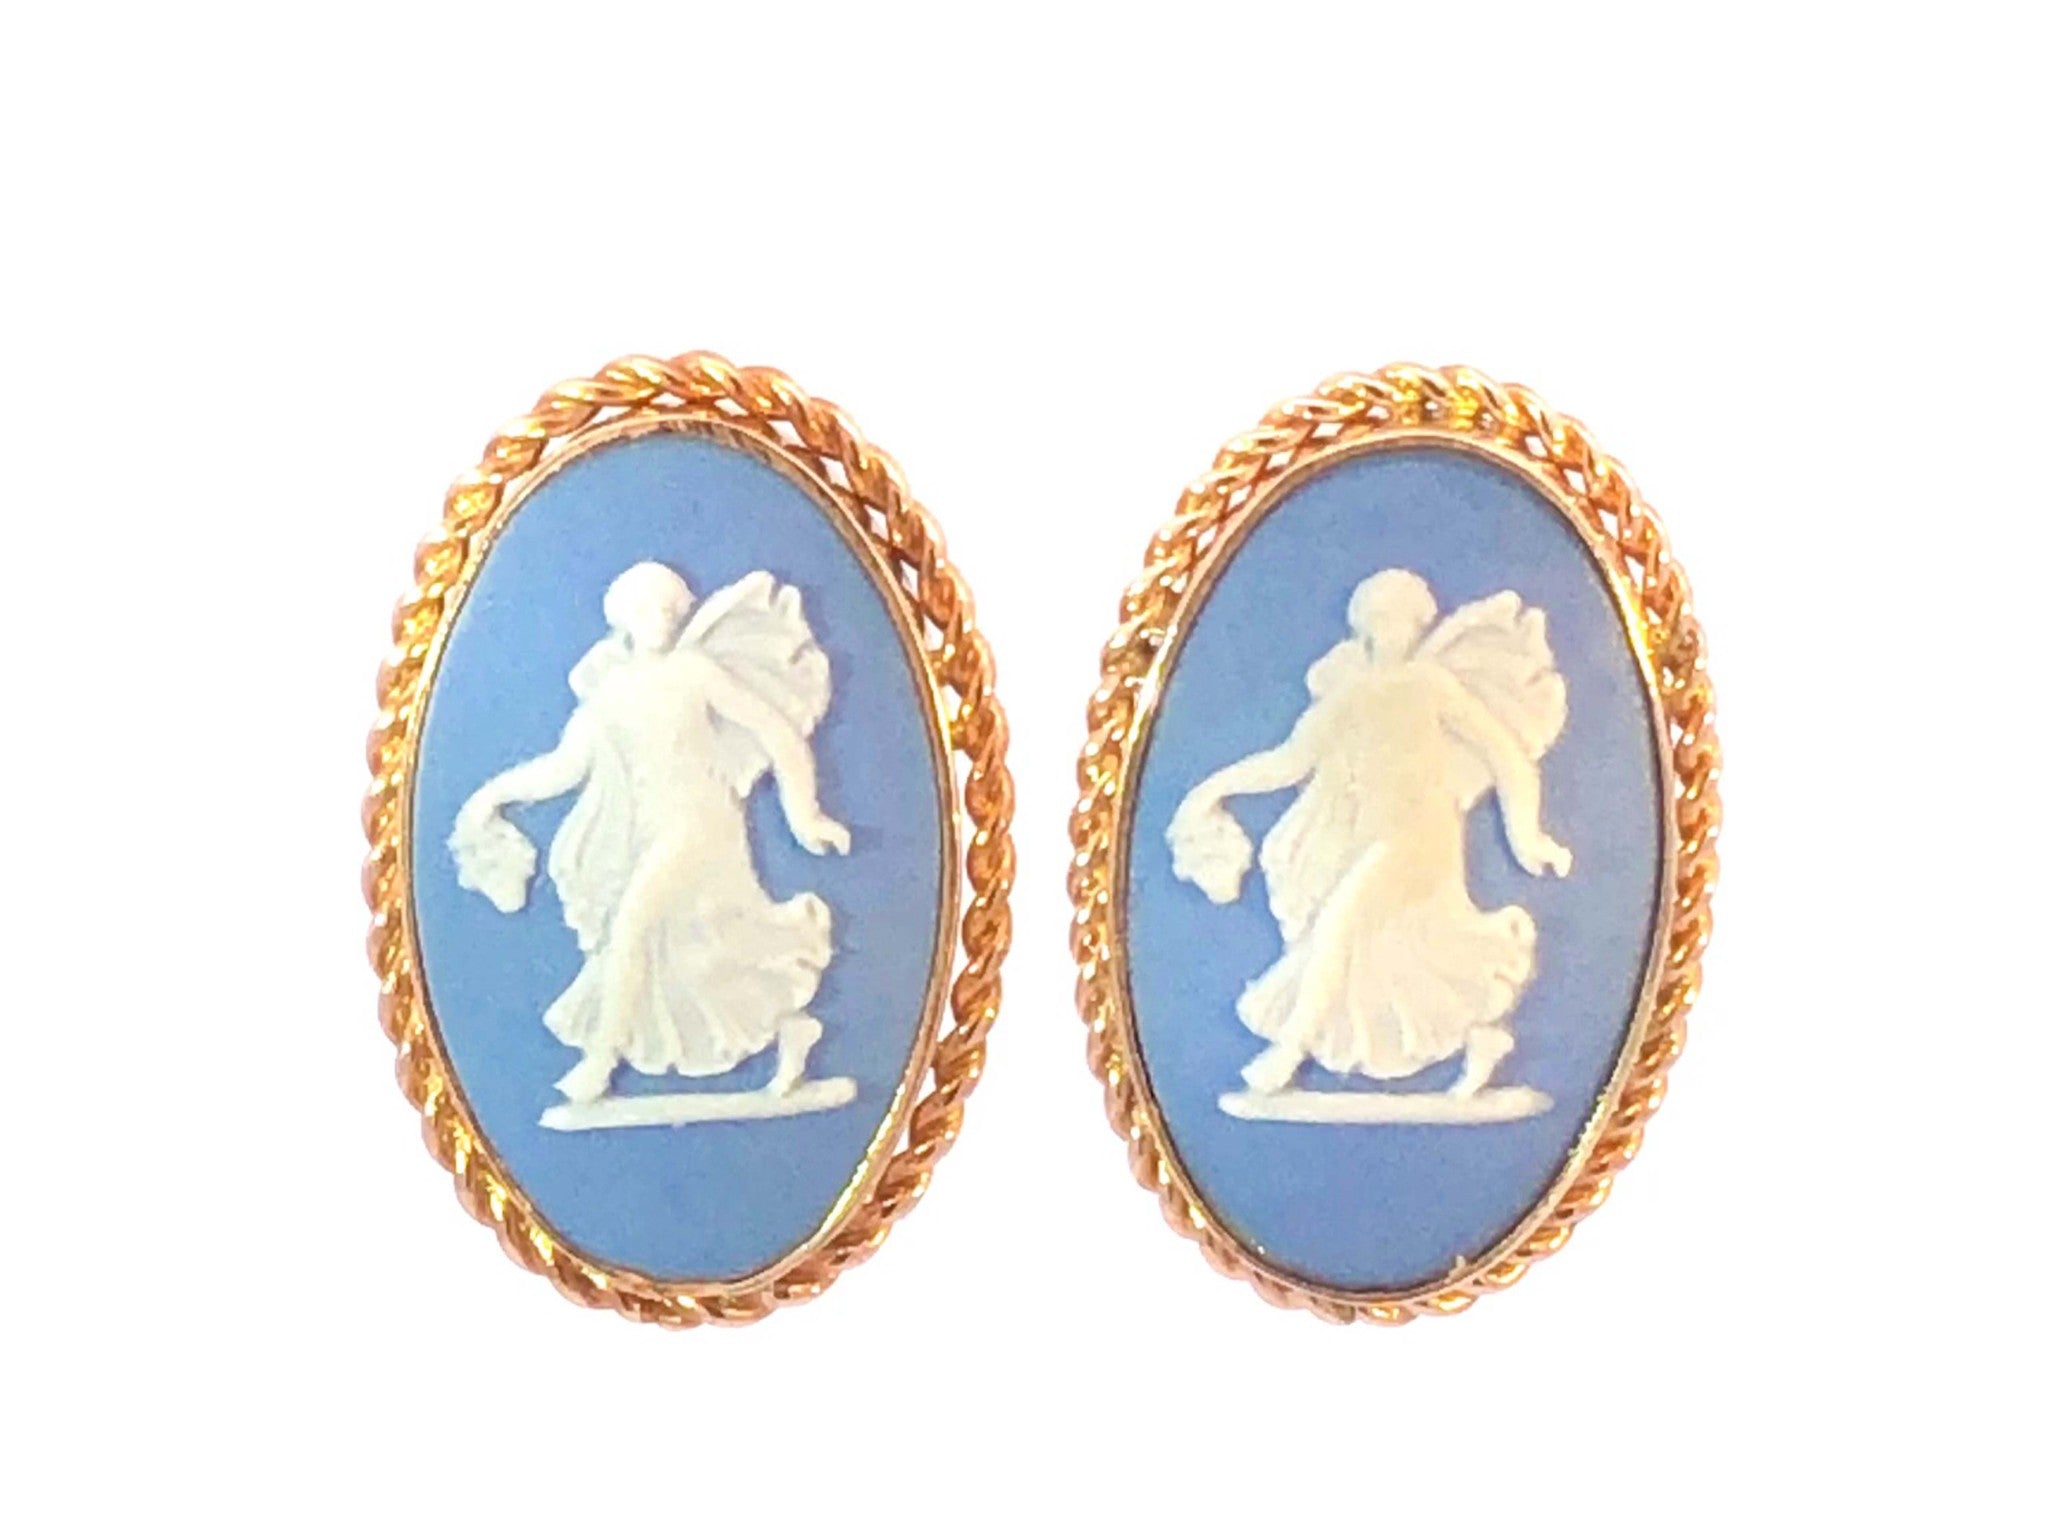 Wedgwood Jasper Wear Blue Oval Earrings & Pendant Brooch Set in 14K Yellow Gold